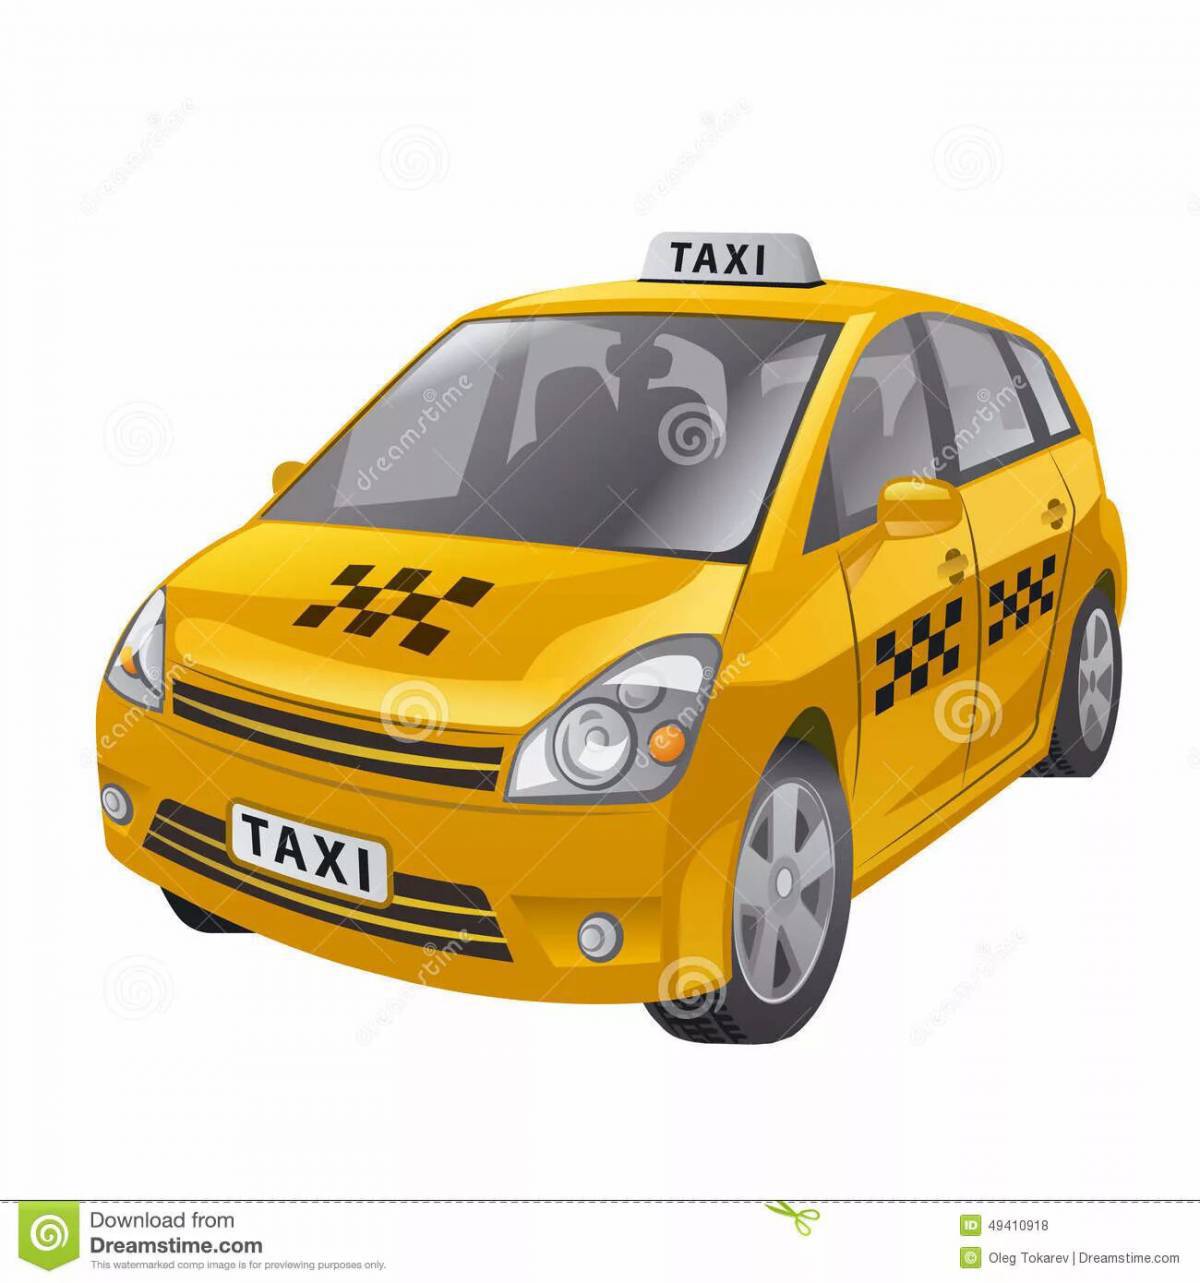 Такси для детей #22